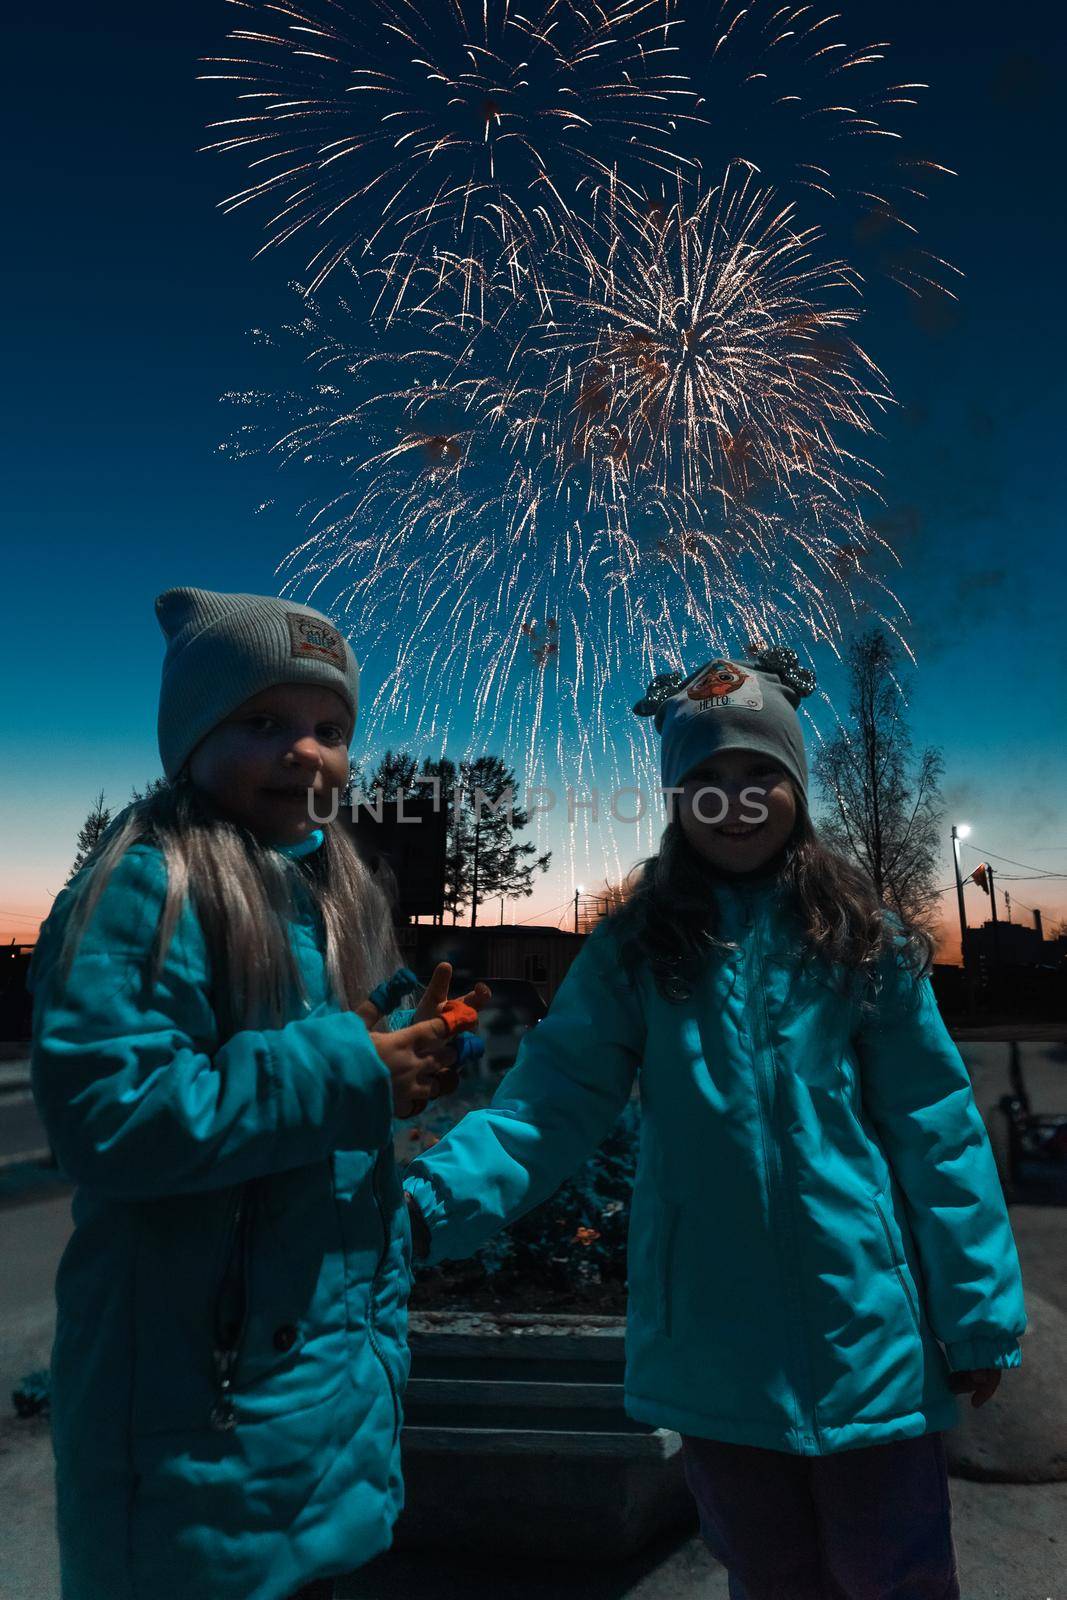 little girls in the dark on fireworks in warm jackets by krol666